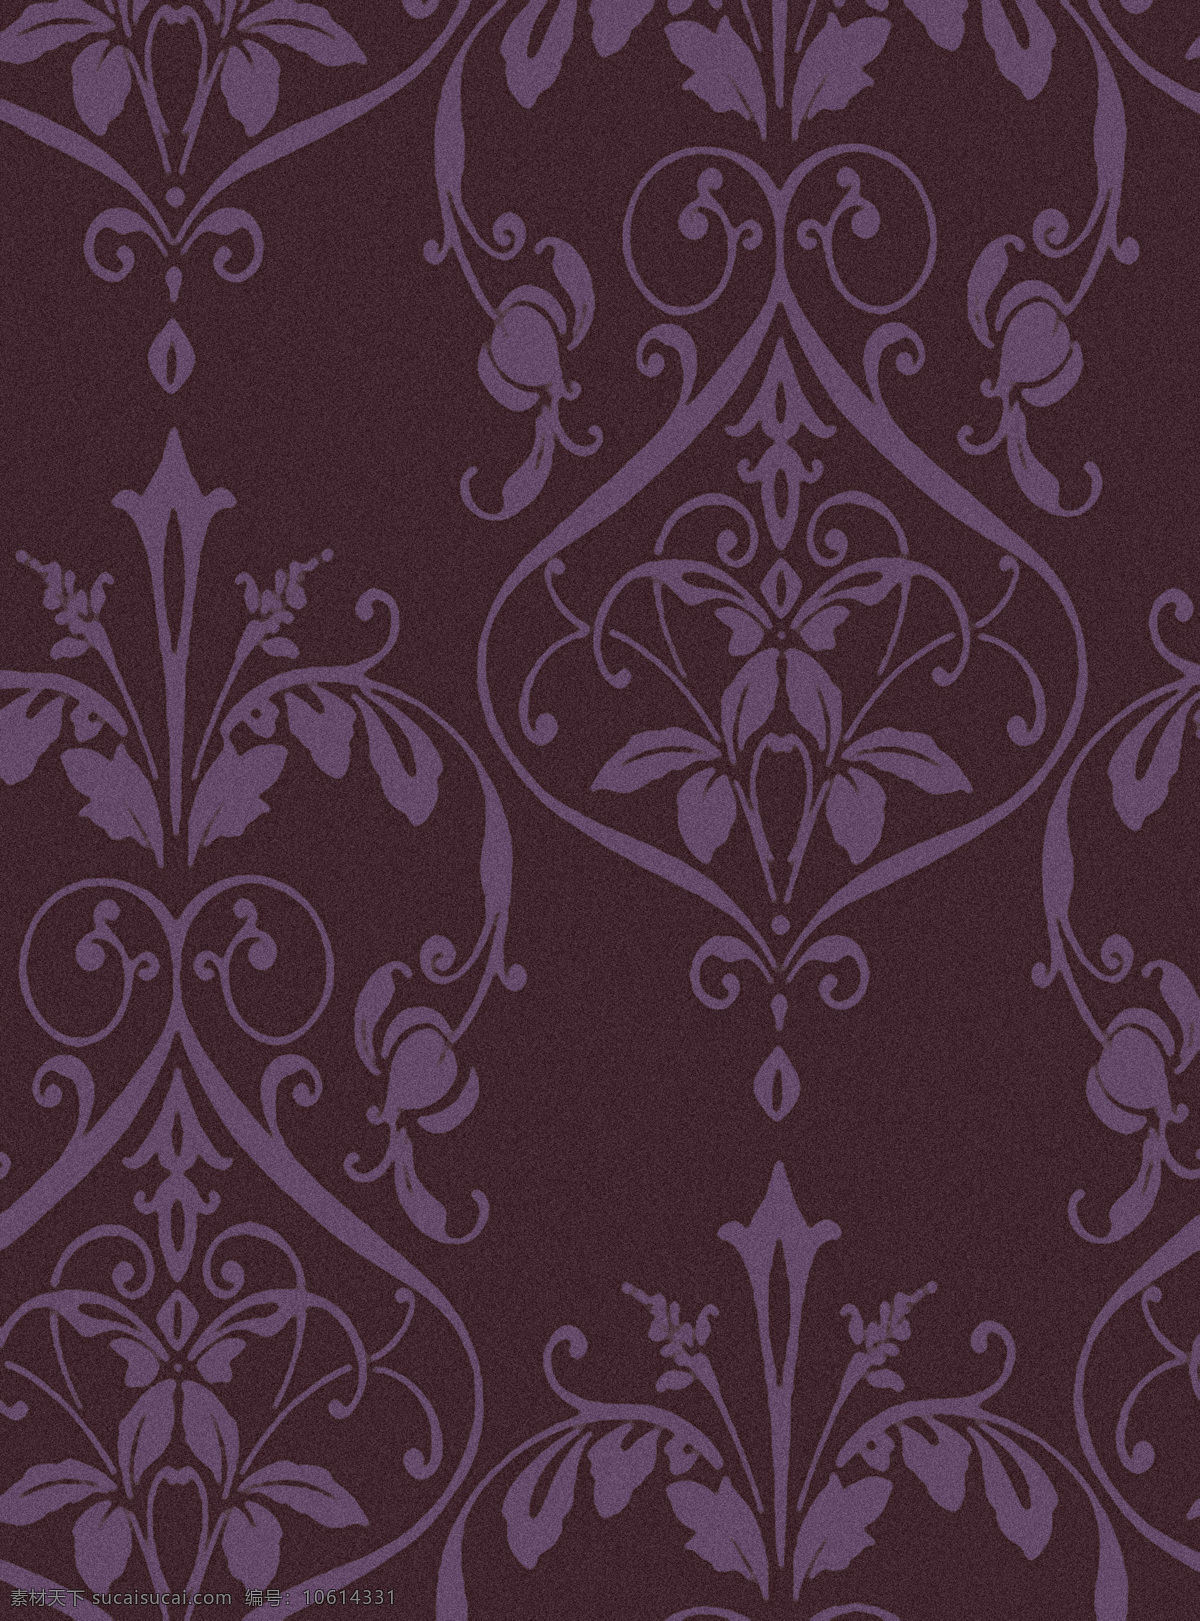 高雅 墙纸 背景底纹 底纹边框 花纹 曲线 紫色 设计素材 模板下载 高雅墙纸 装饰素材 壁纸墙画壁纸